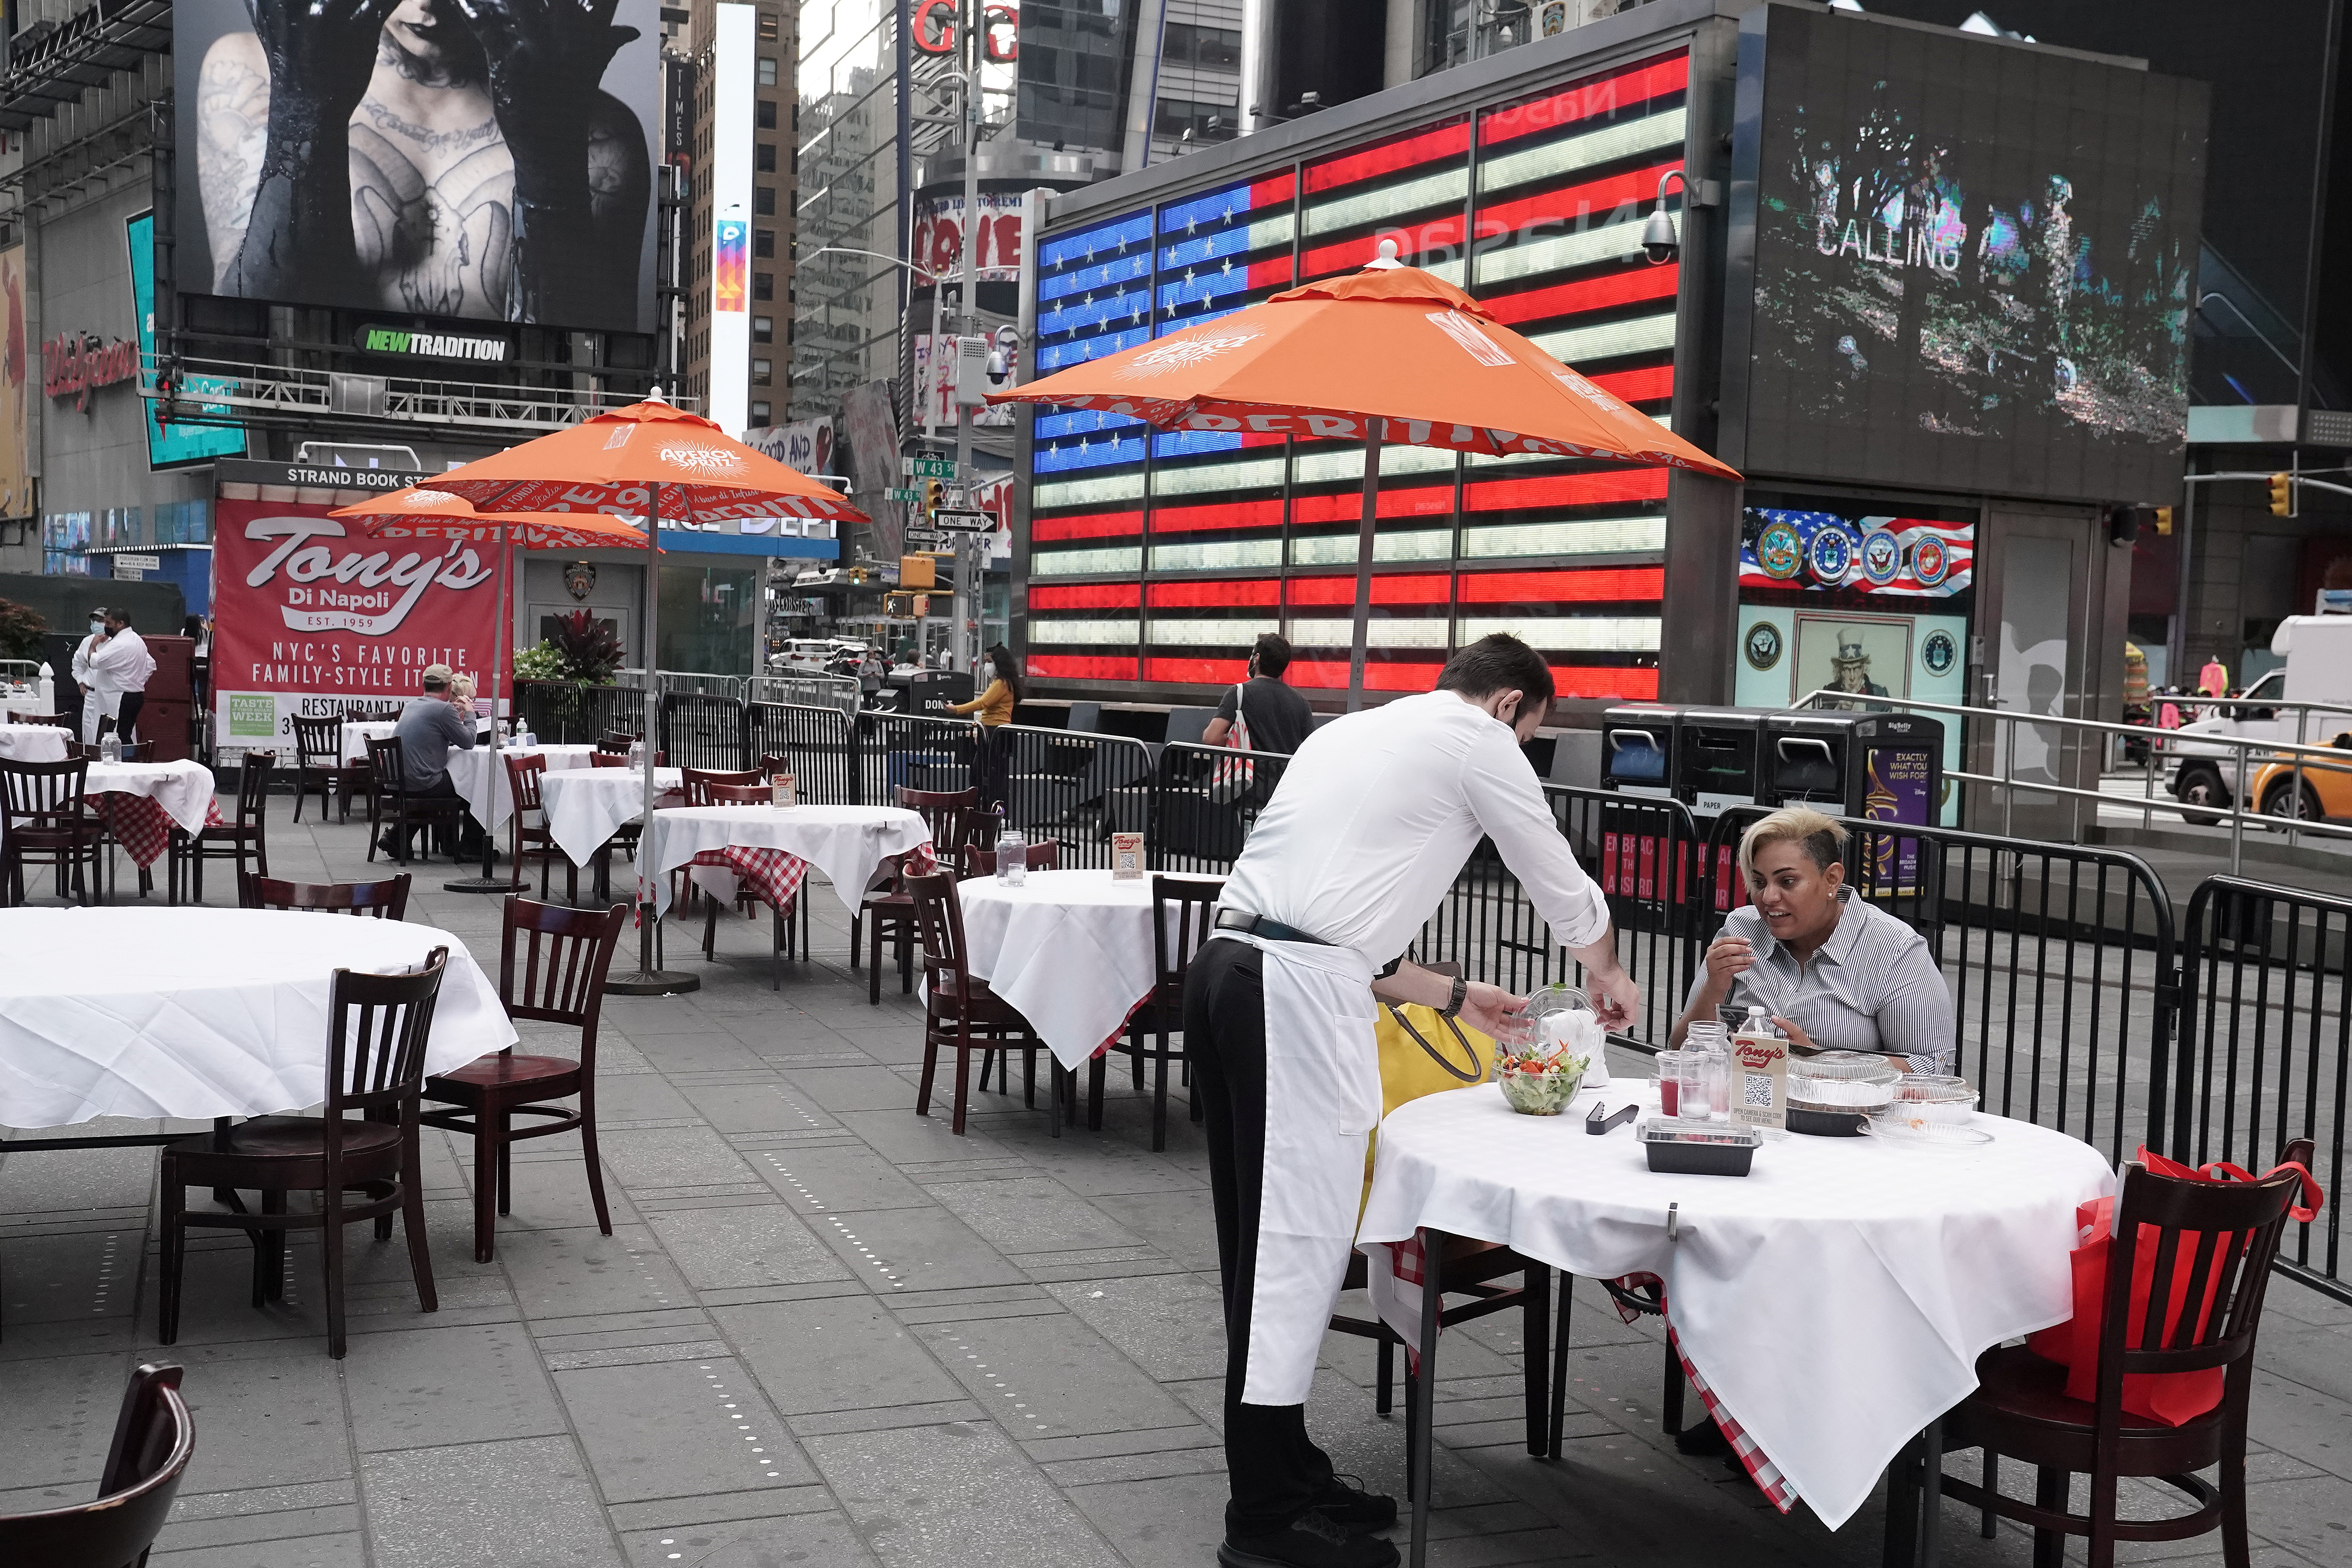 Un restaurante con mesas en la vereda en Times Square, Manhattan, Nueva York. REUTERS/Carlo Allegri